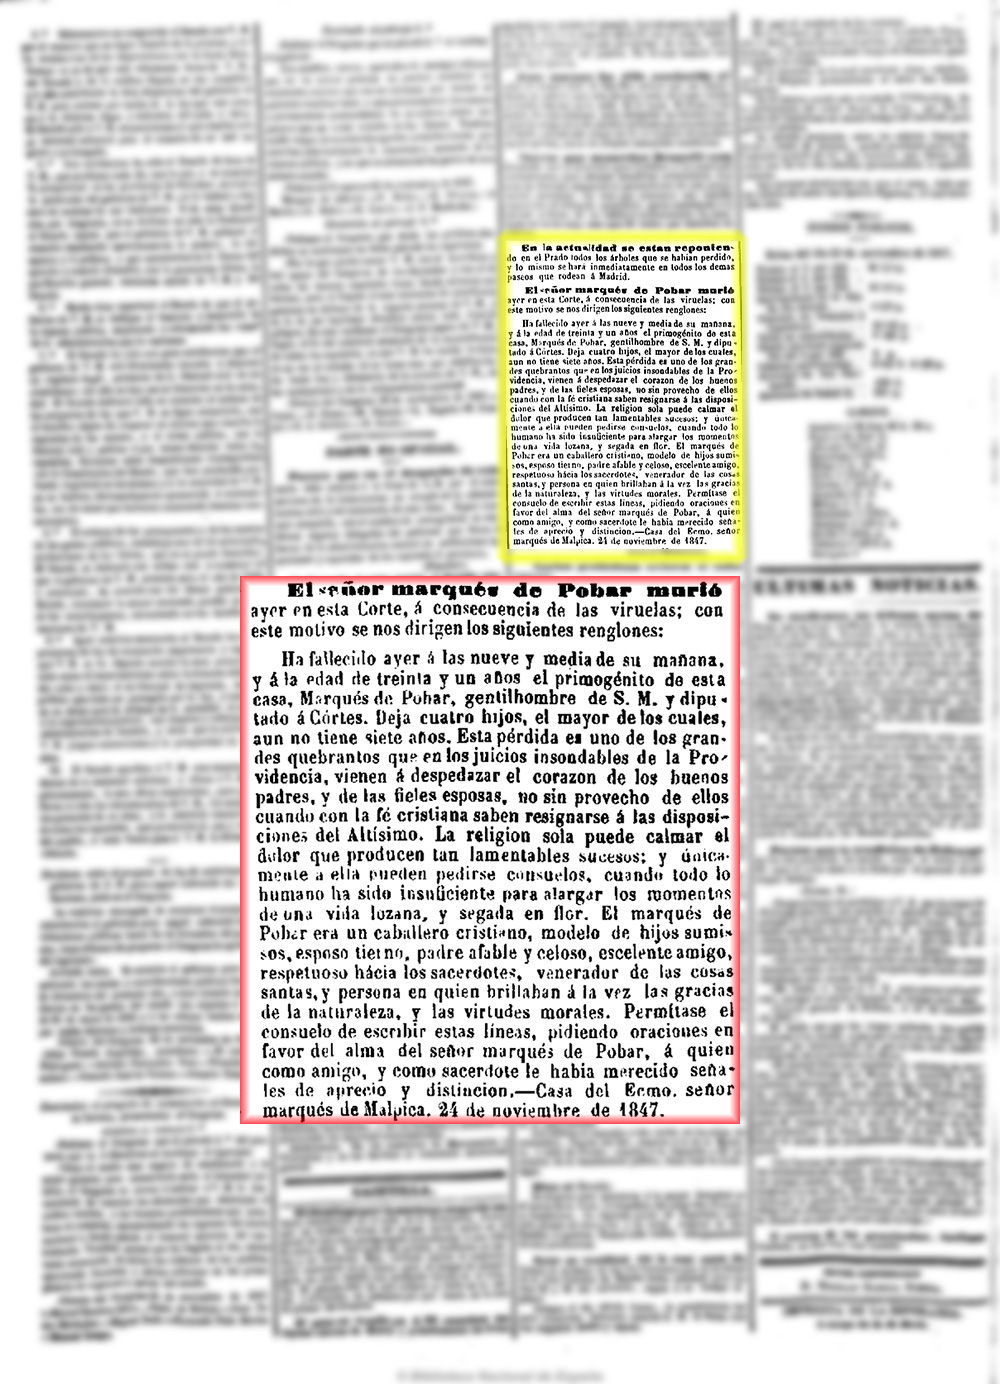 La Esperanza 24/11/1847 Fallecimiento del marques de Povar